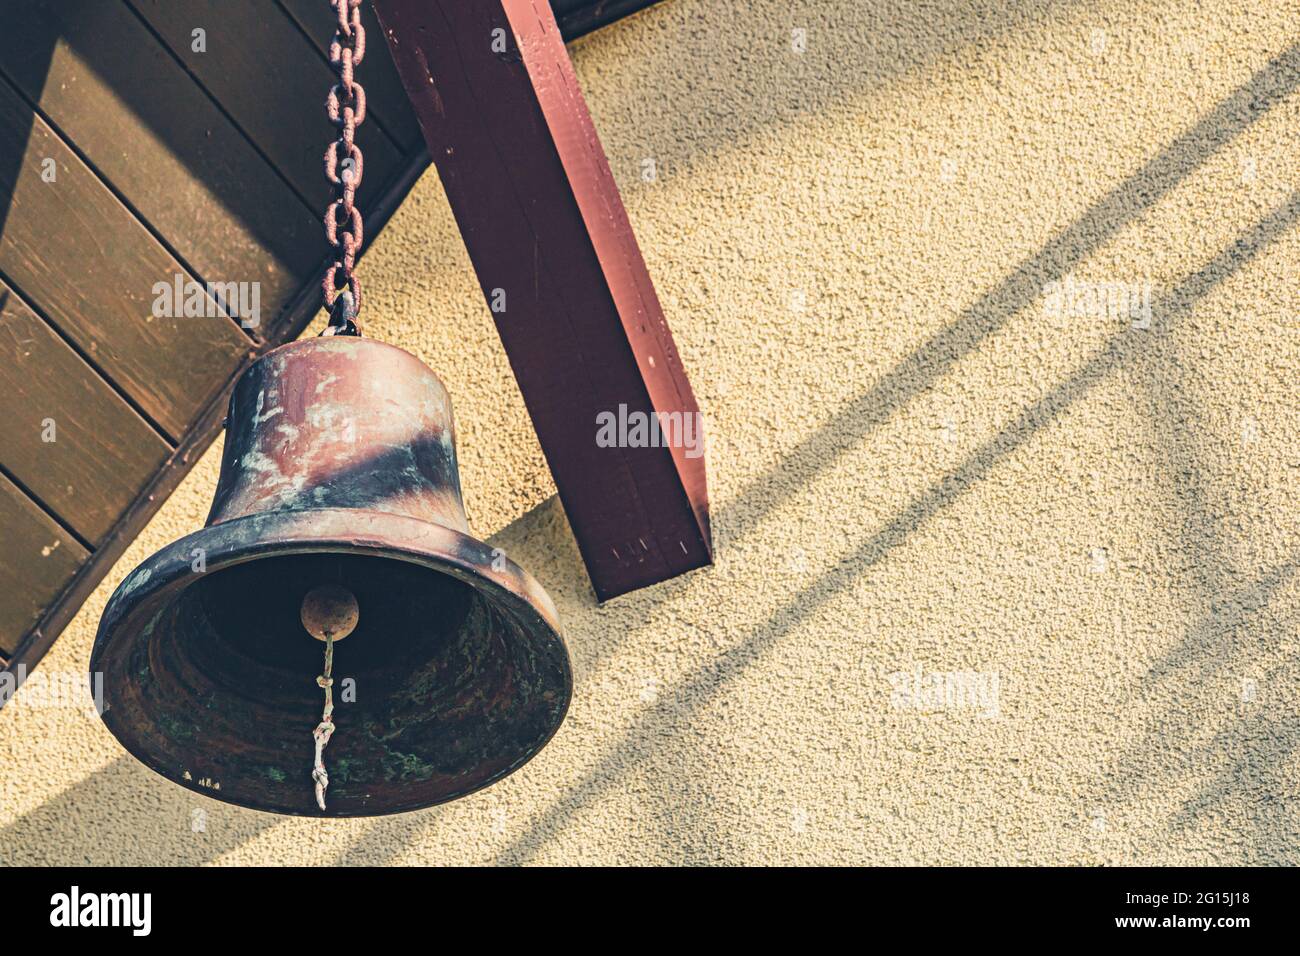 Große, alte Schiffsglocke hängt an einem Holzbalken als Dekoration - Glocke als Deko an einer Kette Stock Photo